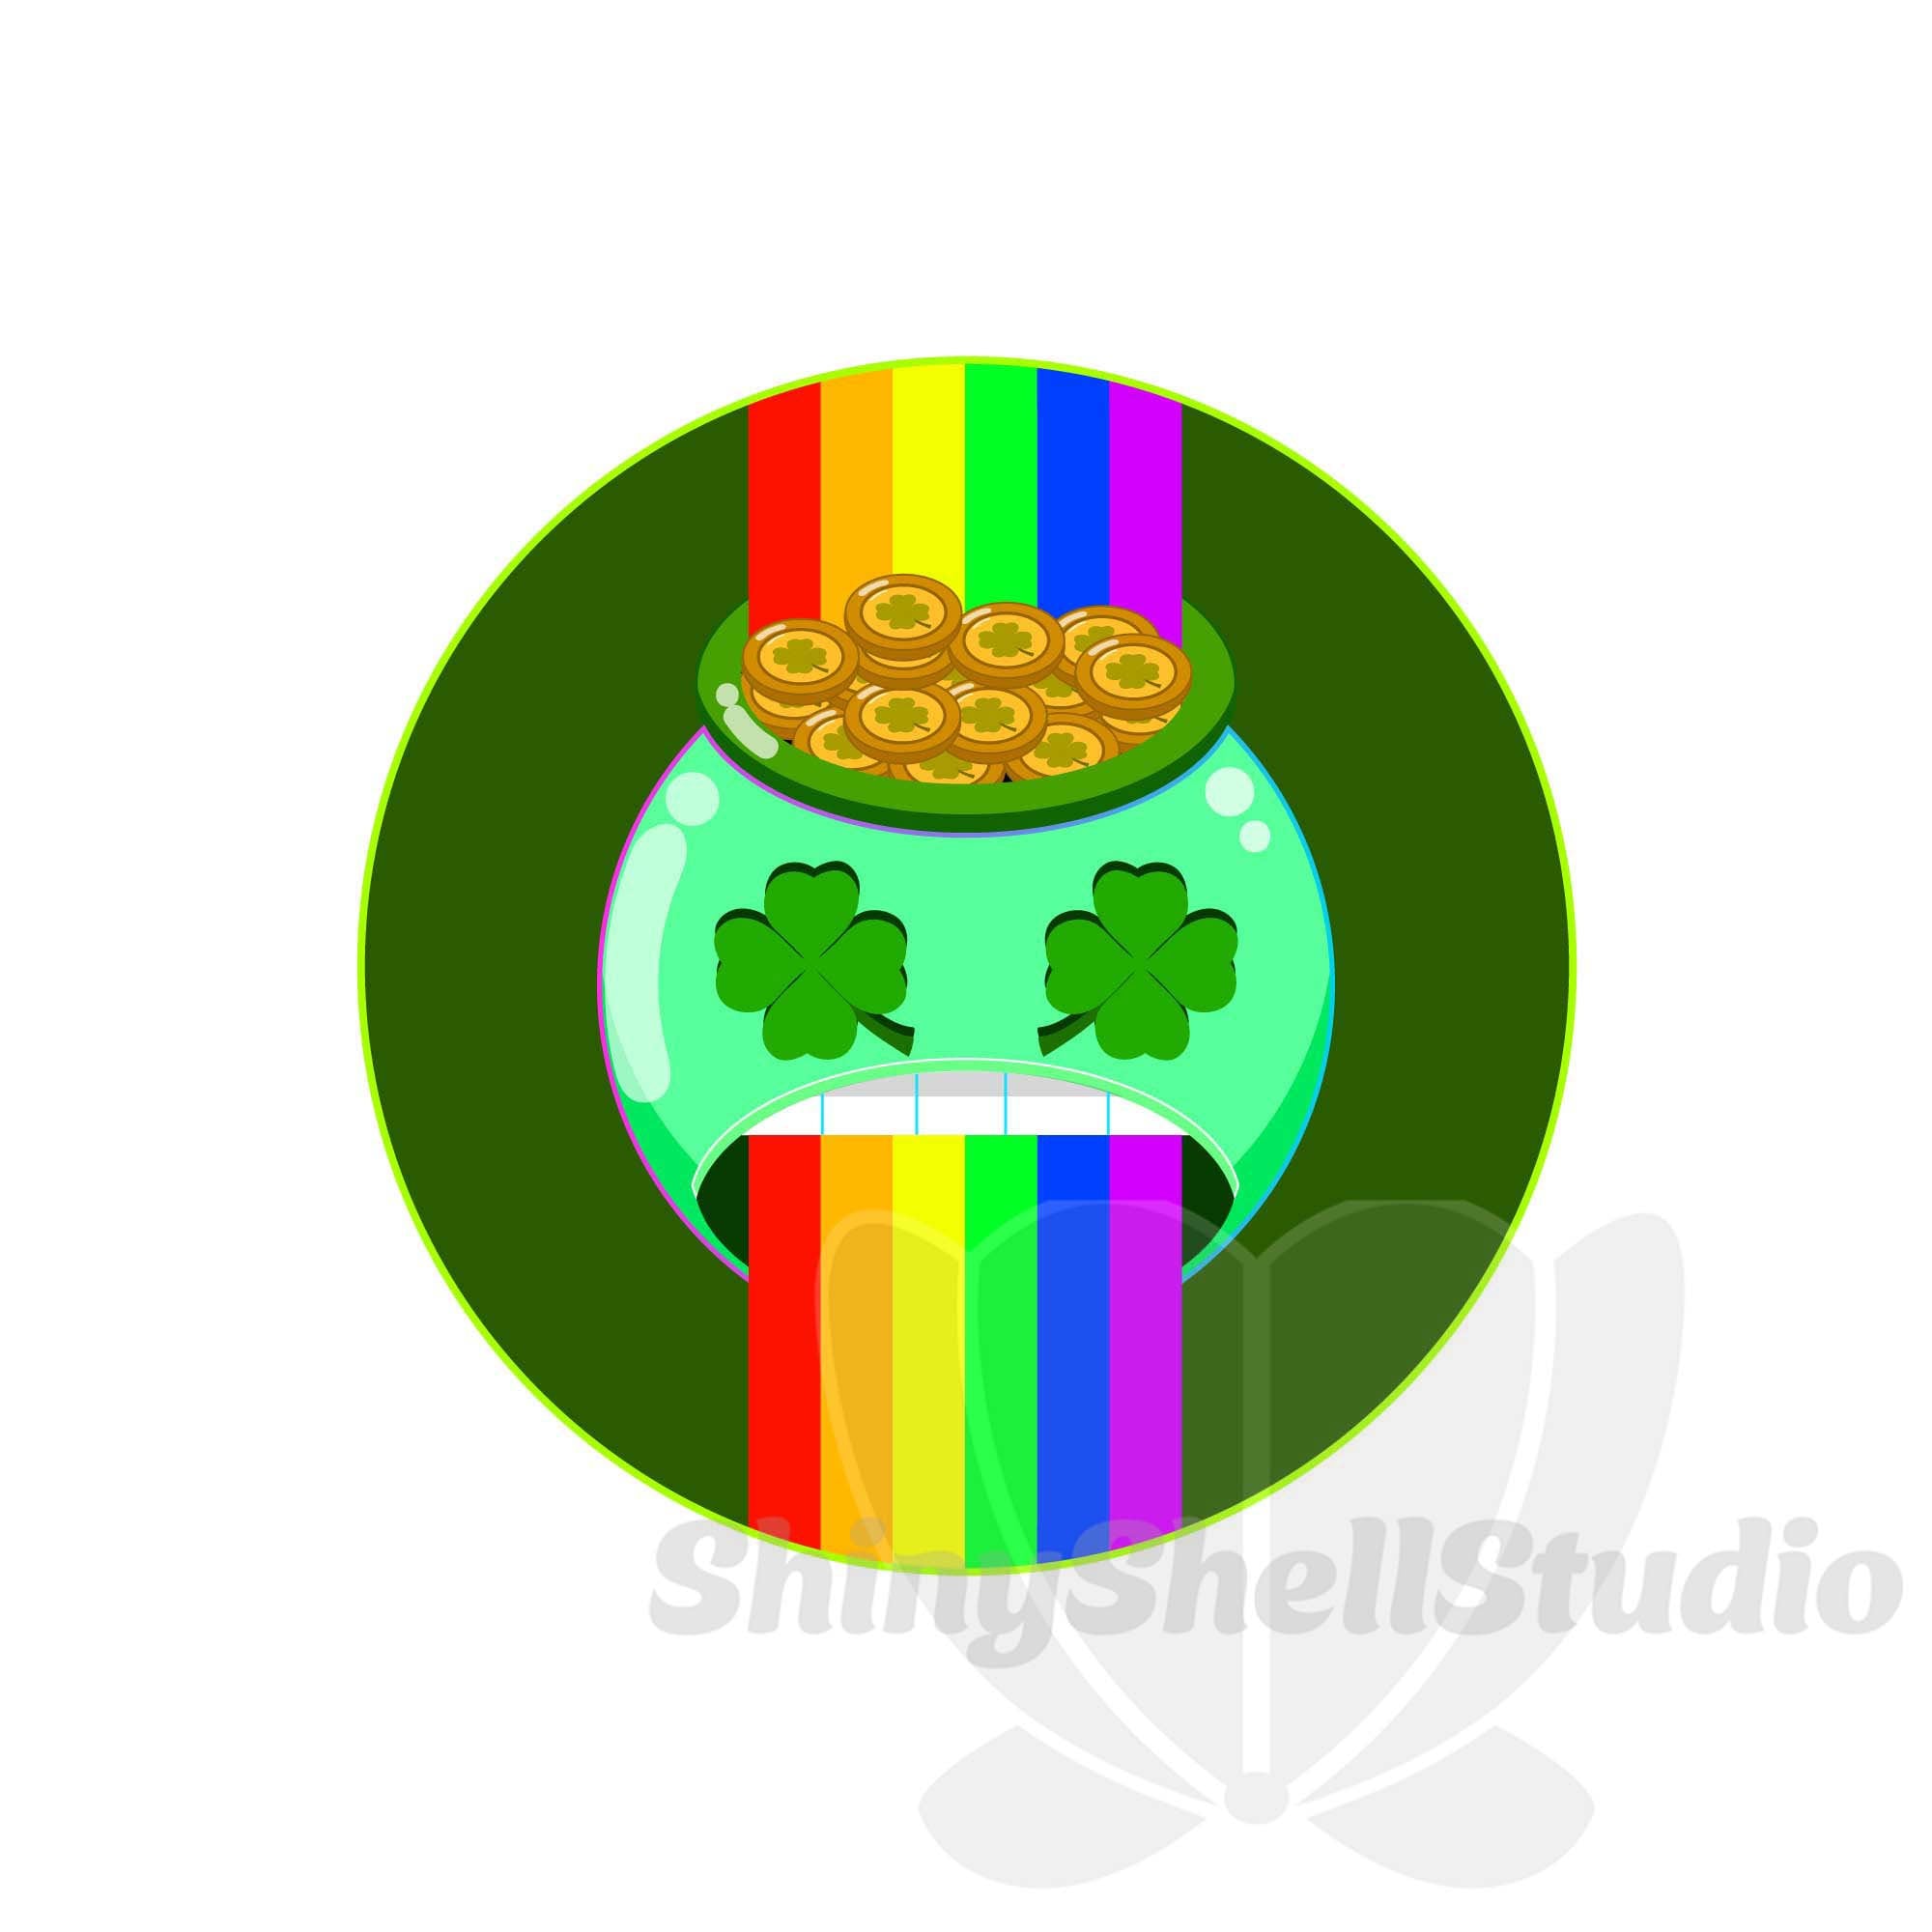 Funny Glitter St Patricks Smile Emoji Sublimation Download Png